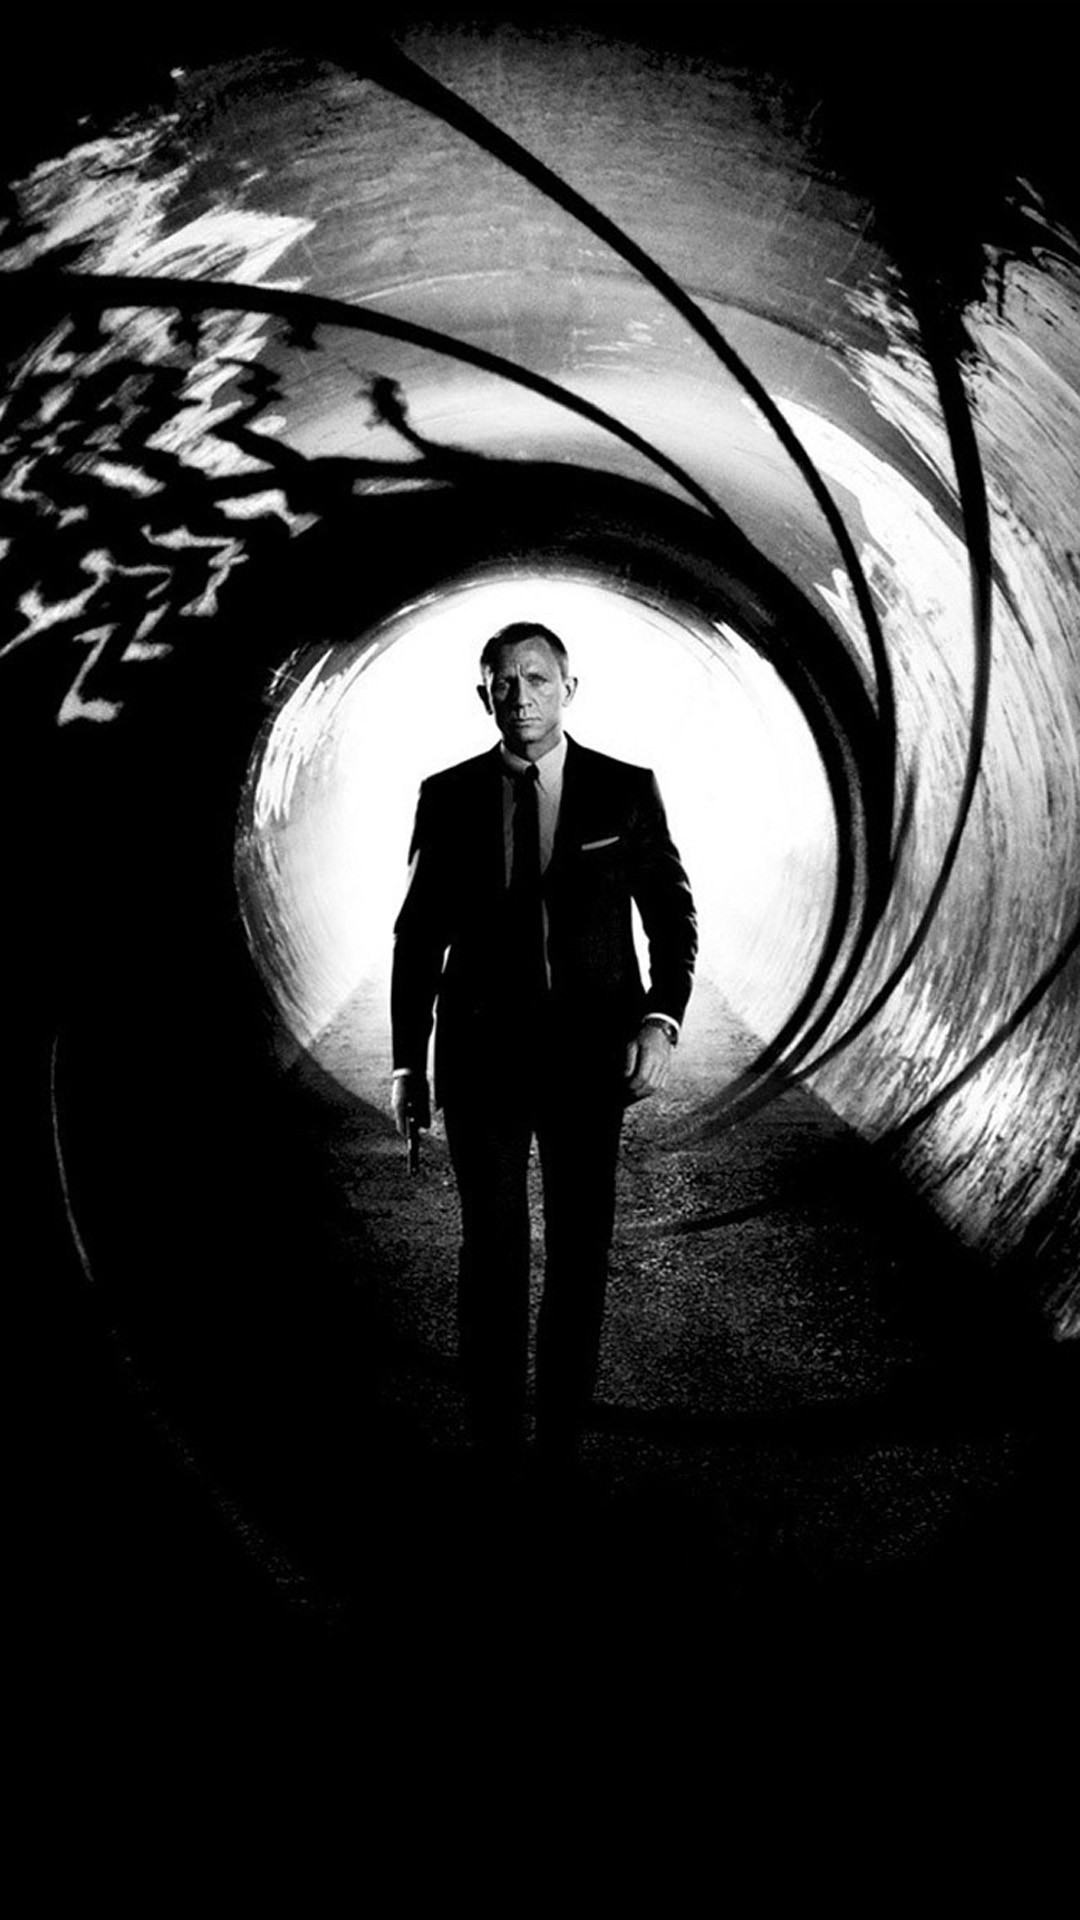 007 아이폰 배경 화면,사진,검정색과 흰색,흑백 사진,어둠,단색화